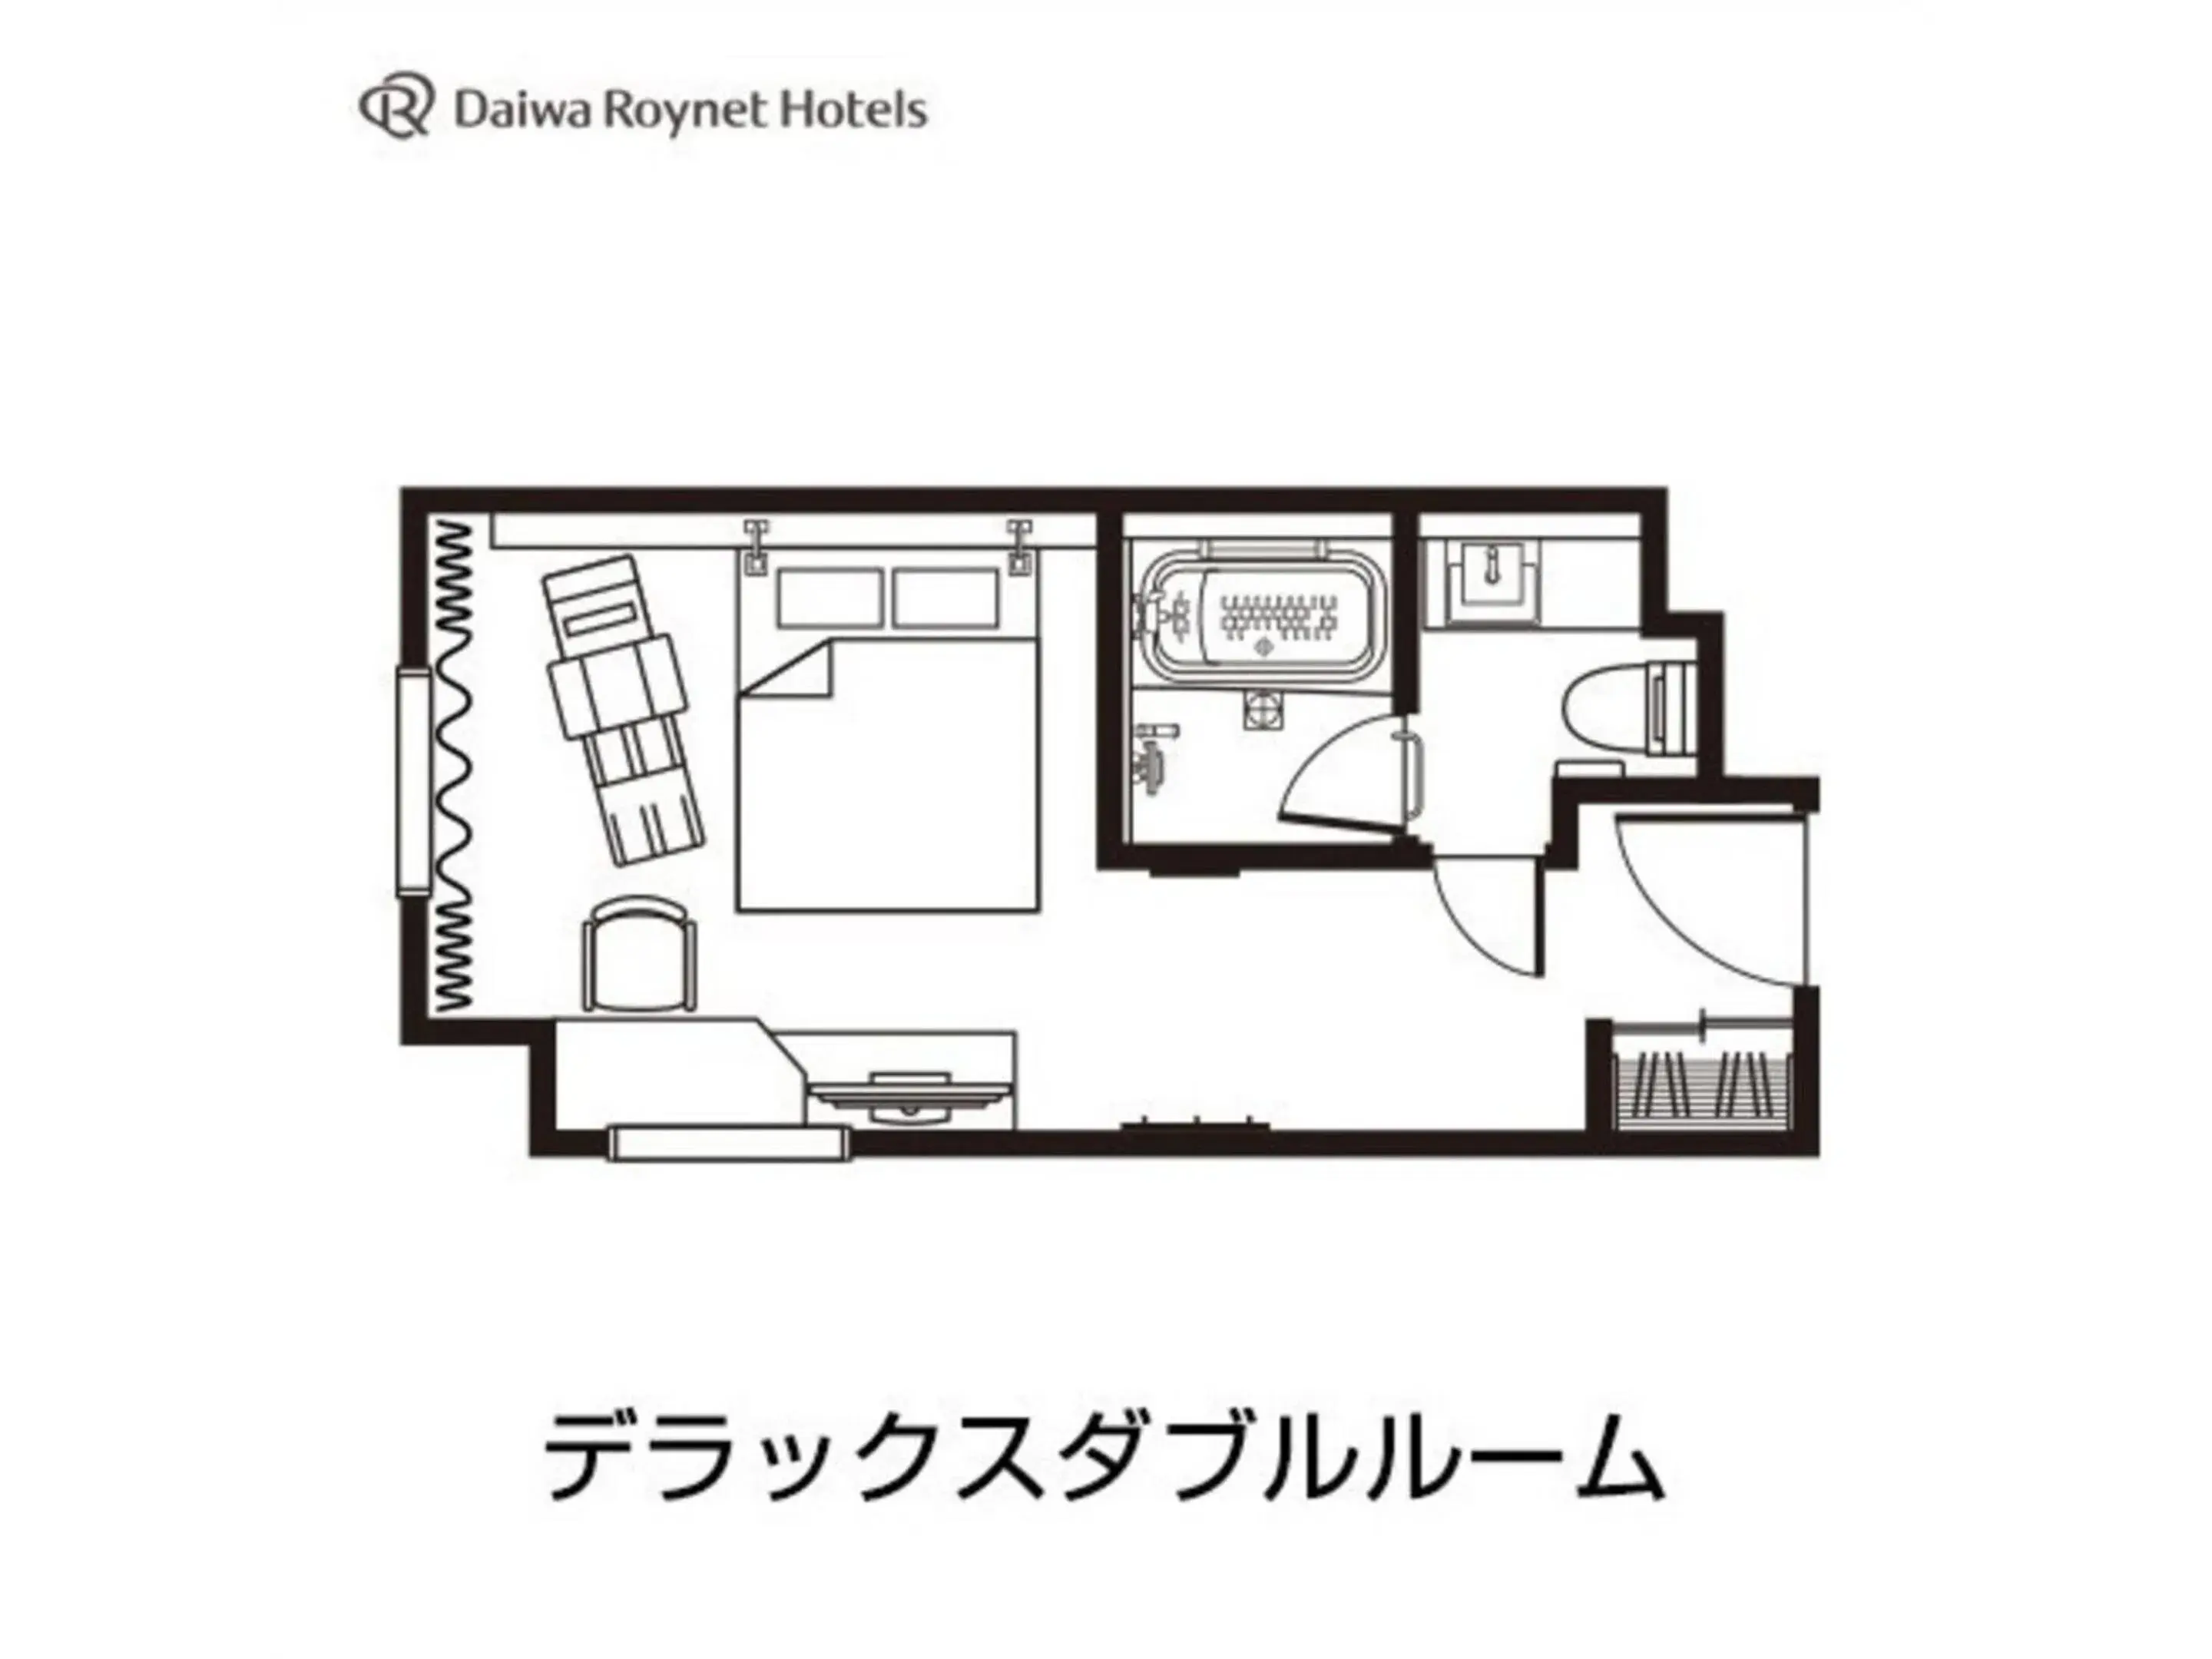 Floor Plan in Daiwa Roynet Hotel Aomori